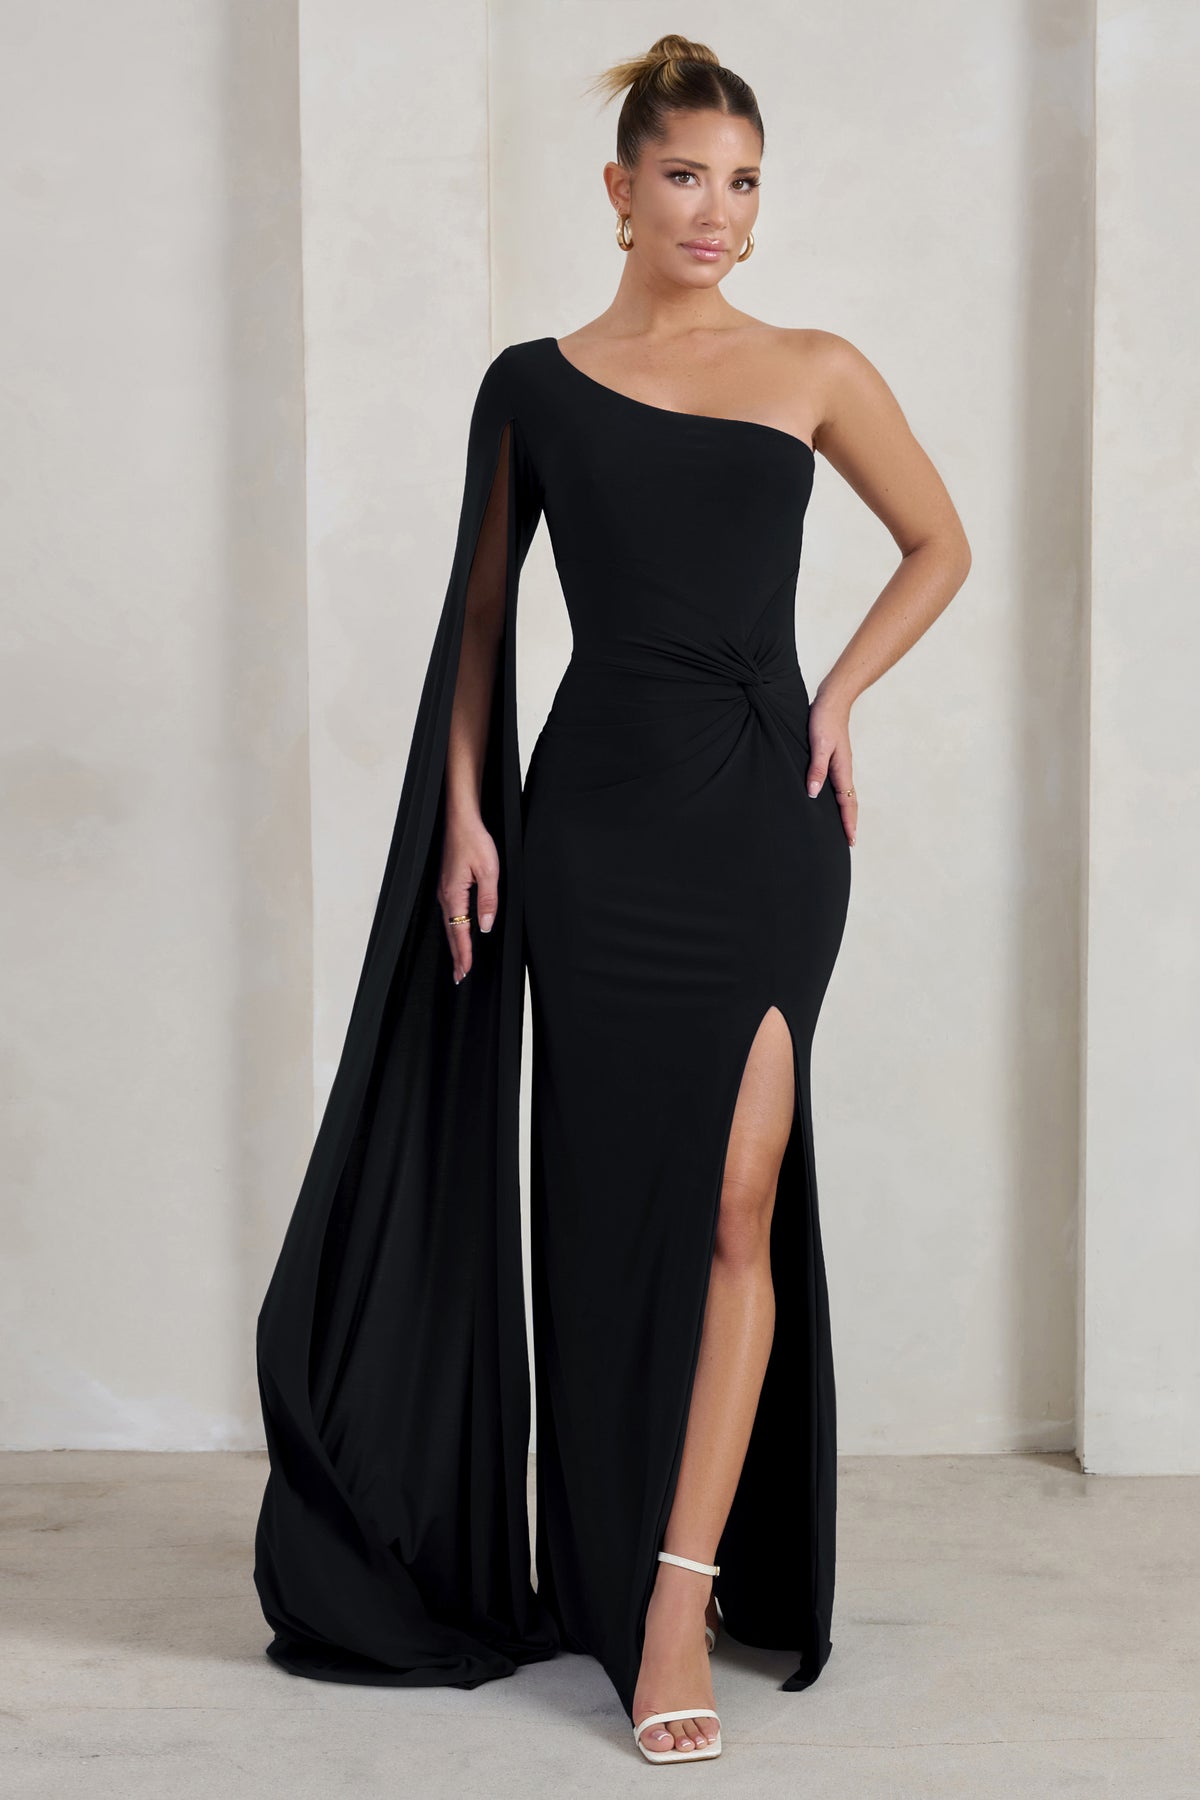 Simple Gold Satin Prom Dresses Long Off Shoulder Evening Dress 24114 –  Viniodress